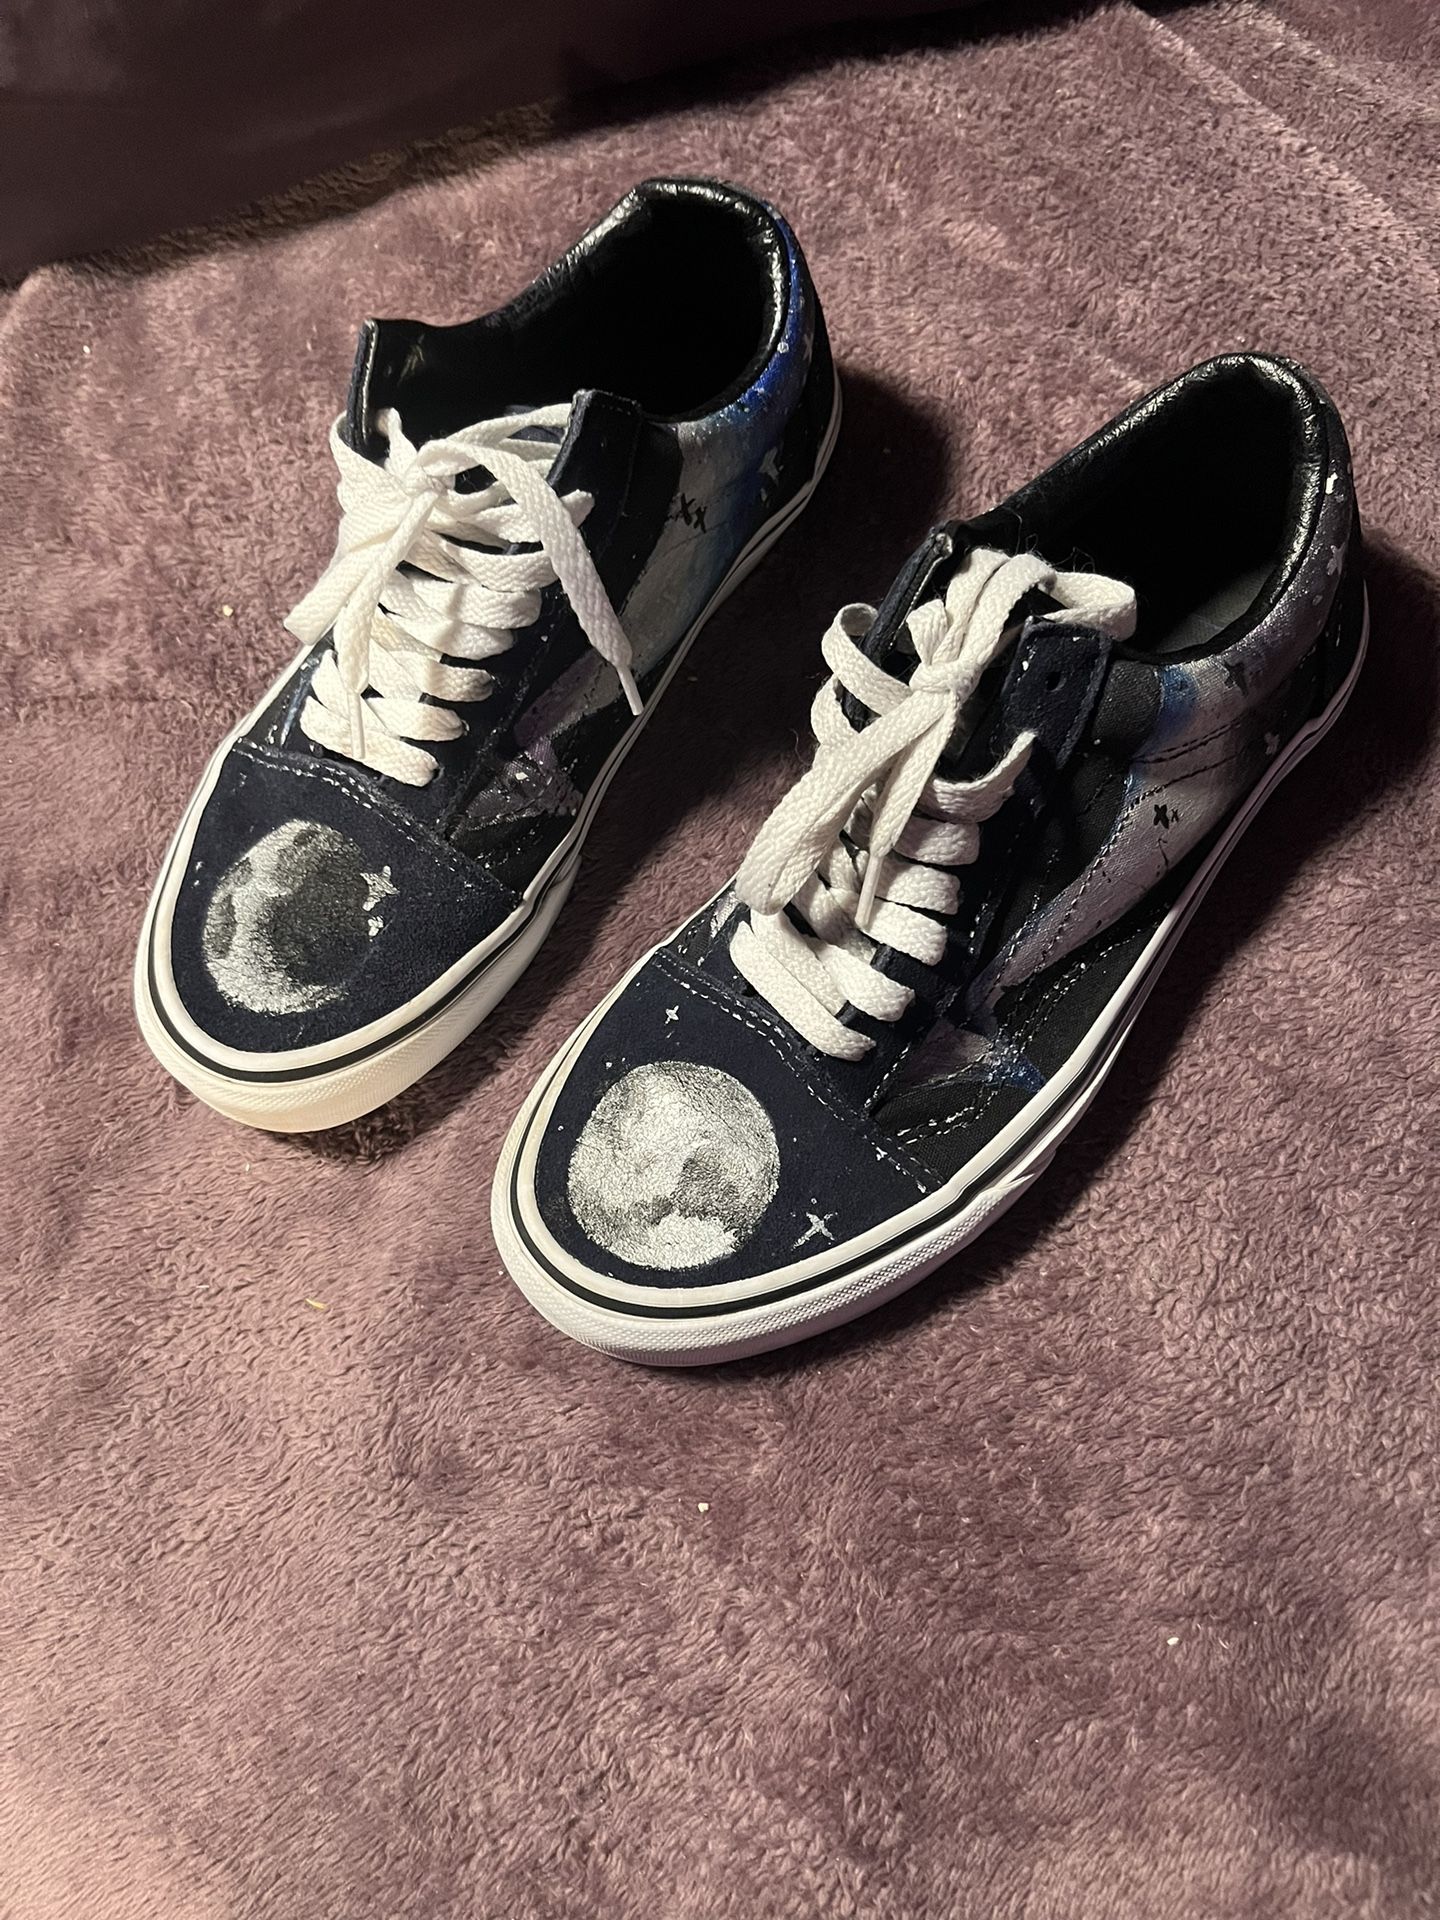 Vans Old Skool Sneaker, Black/White, 7M / 8.5W